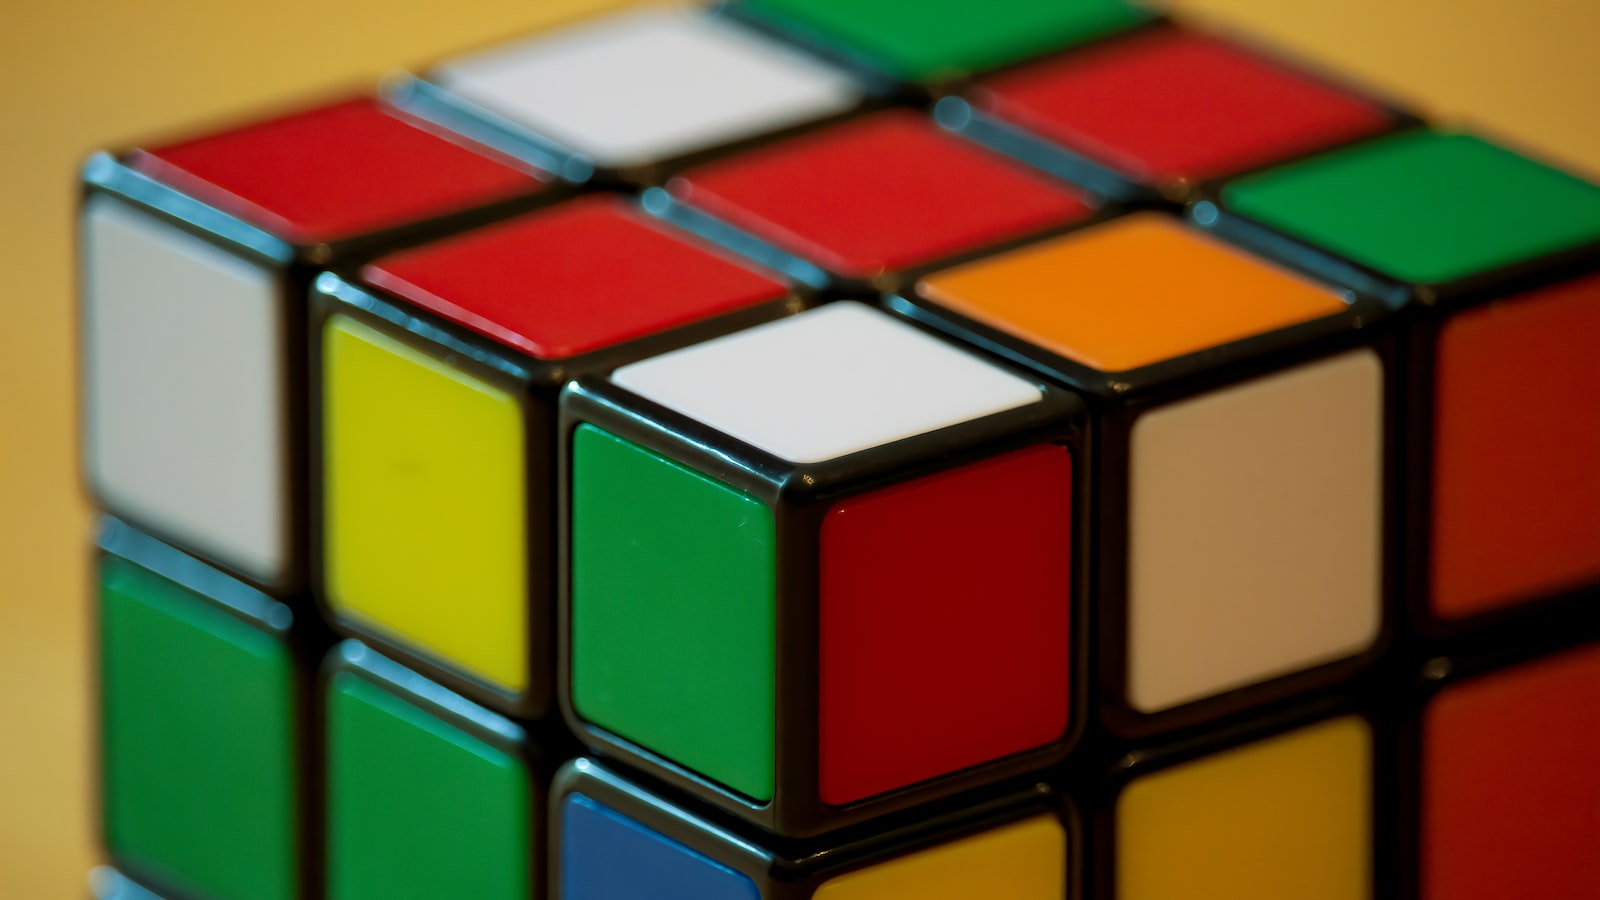 1. Lợi ích của việc làm quen với thủ thuật Rubik 4x4